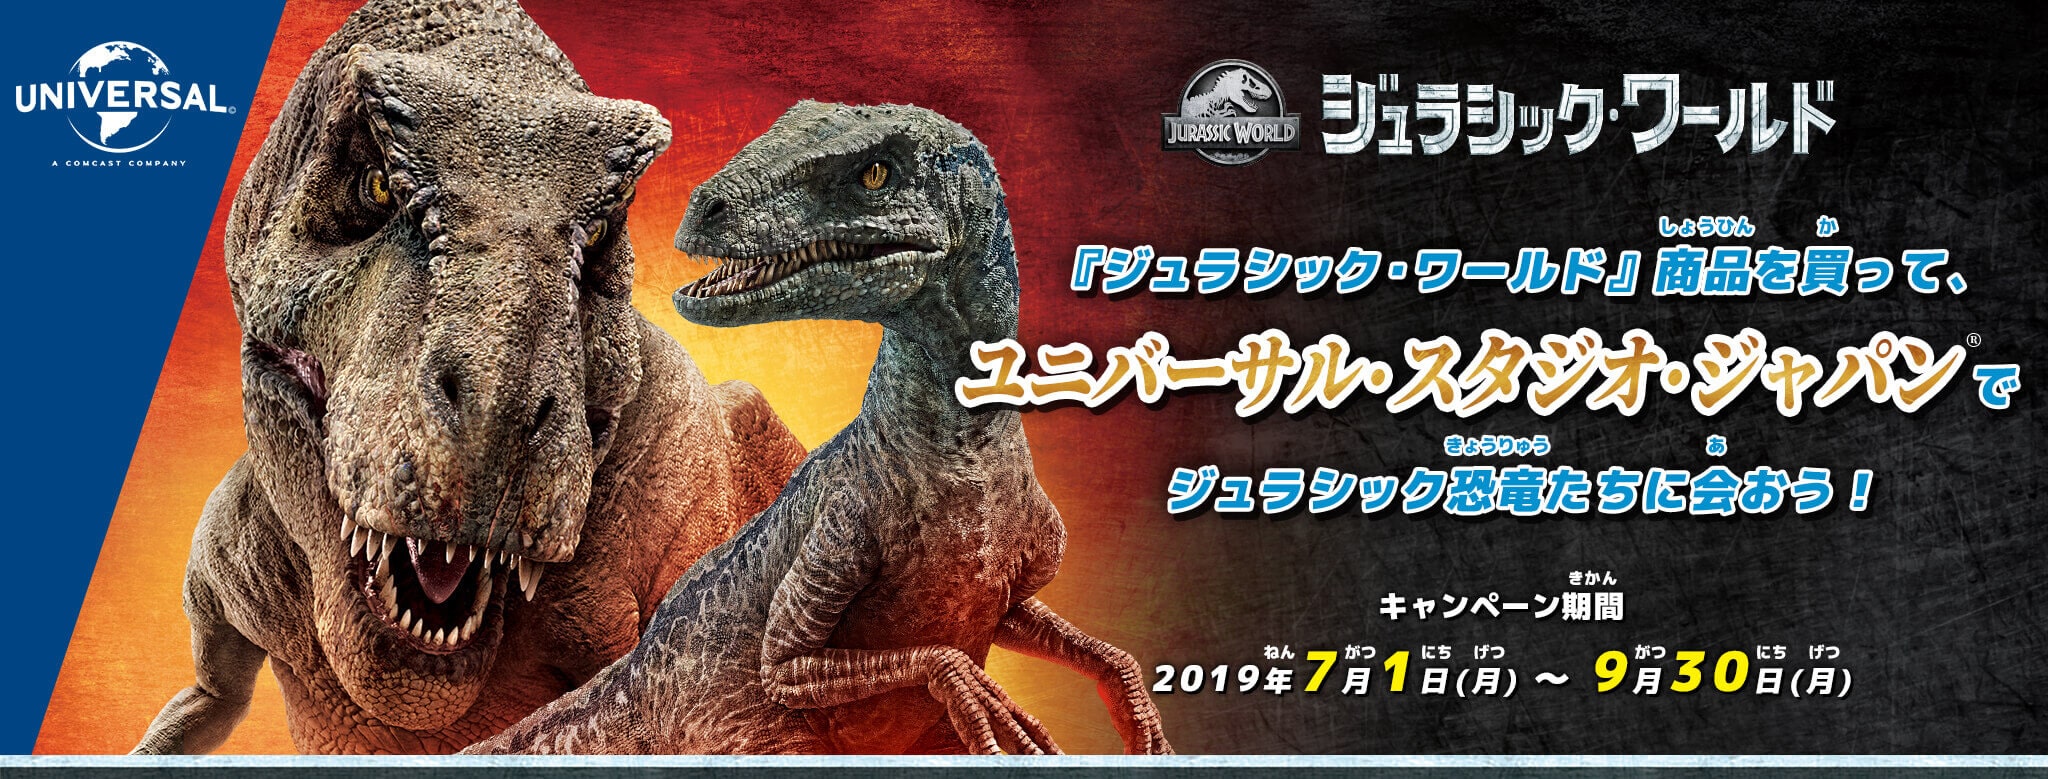 『ジュラシック・ワールド』商品を買って、ユニバーサル・スタジオ・ジャパンでジュラシック恐竜たちに会おう！